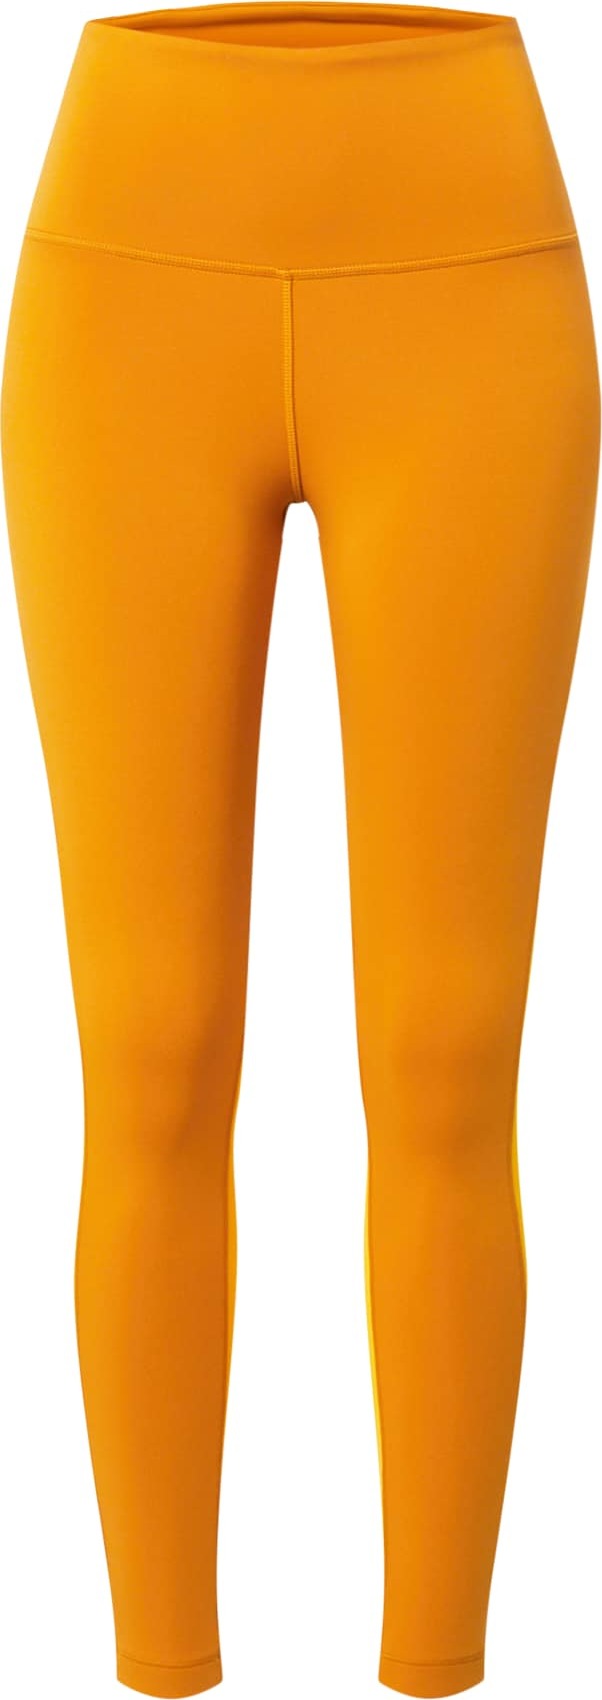 Reebok Sport Sportovní kalhoty žlutá / tmavě oranžová